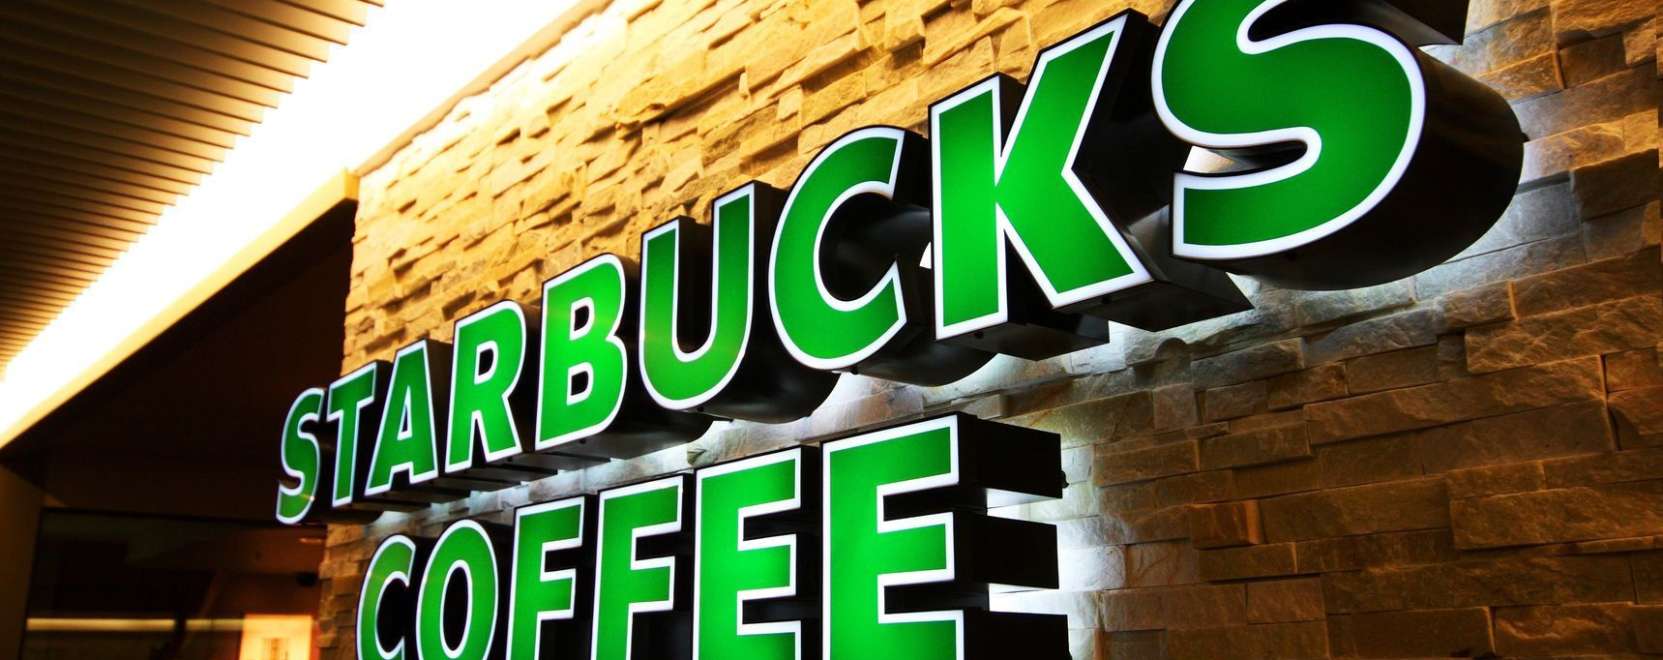 Starbucks buksza: élen a mobilos fizetés 